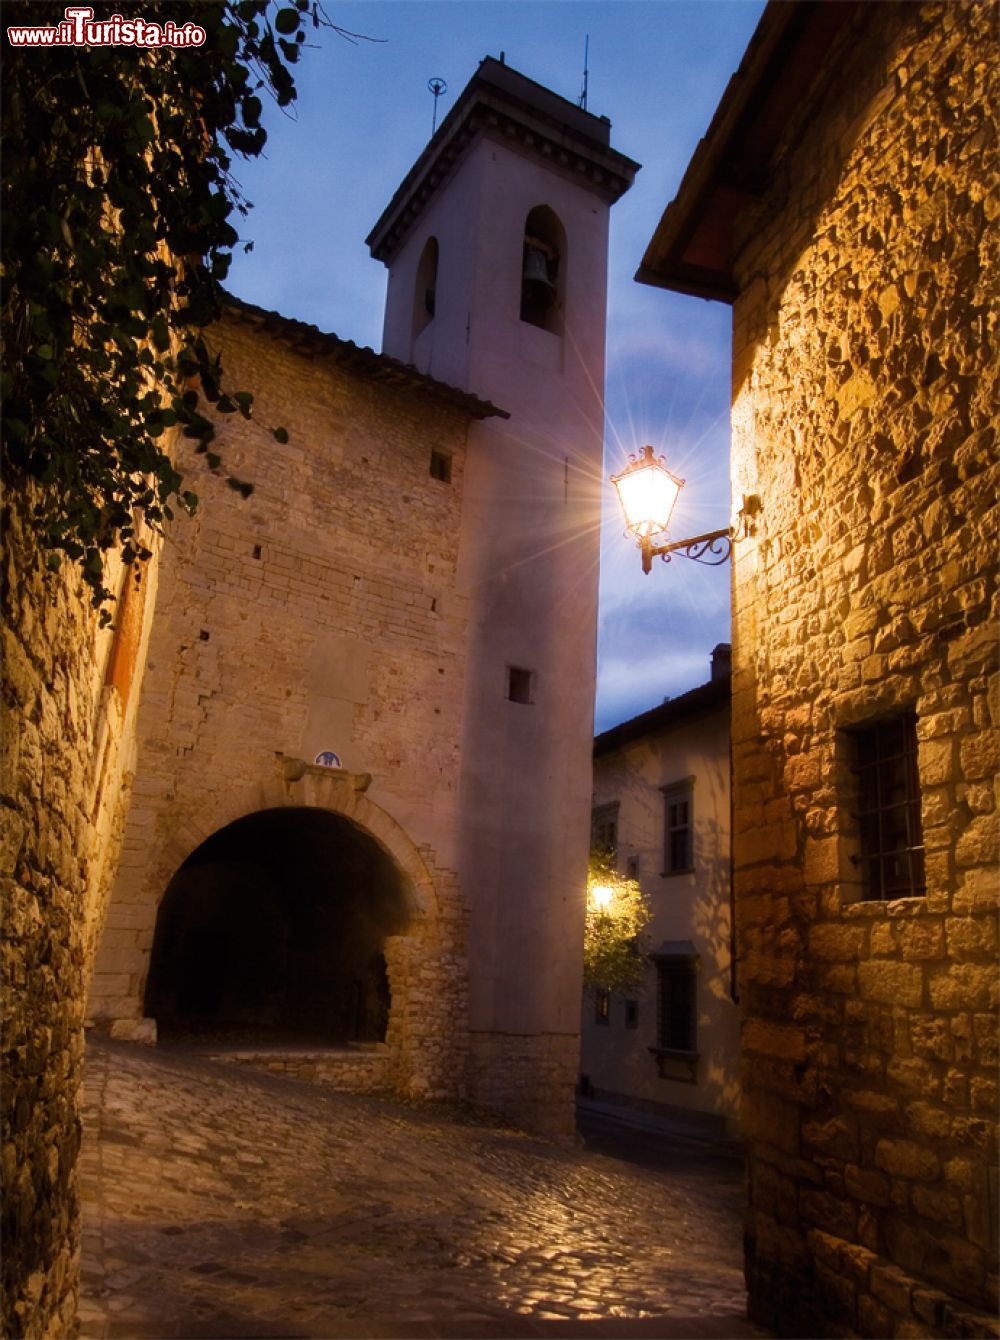 Immagine Visita al borgo medievale di Calenzano - © Lmagnolfi - CC BY-SA 4.0 - Wikipedia